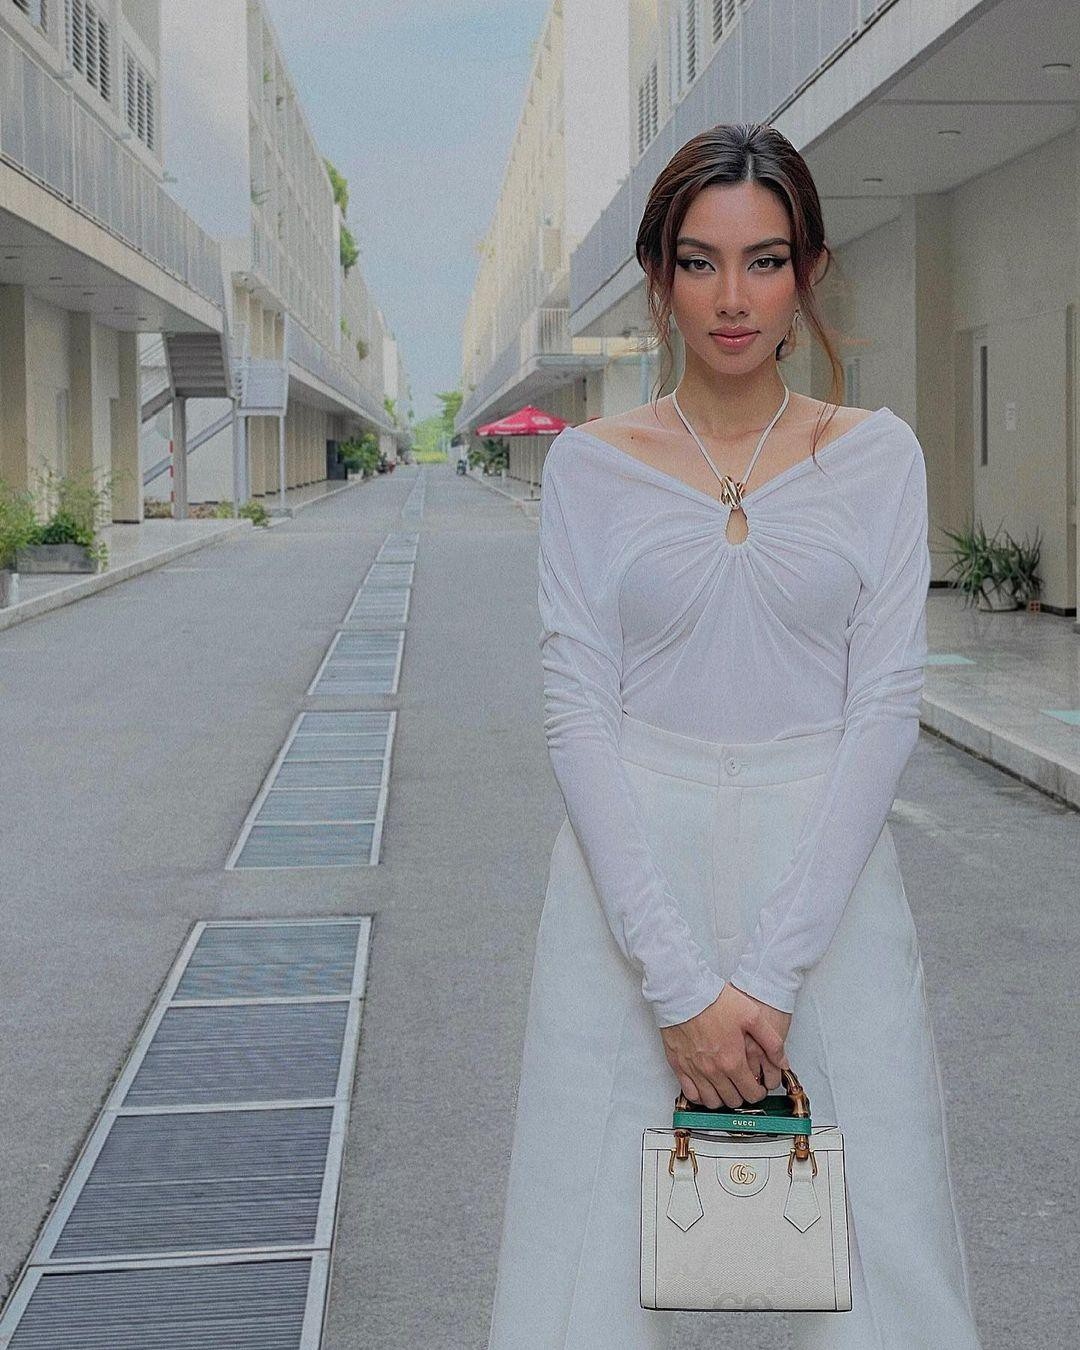 Hoa hậu Hòa bình Quốc tế 2021 thả dáng cuốn hút với với trang phục tông màu trắng gợi cảm.